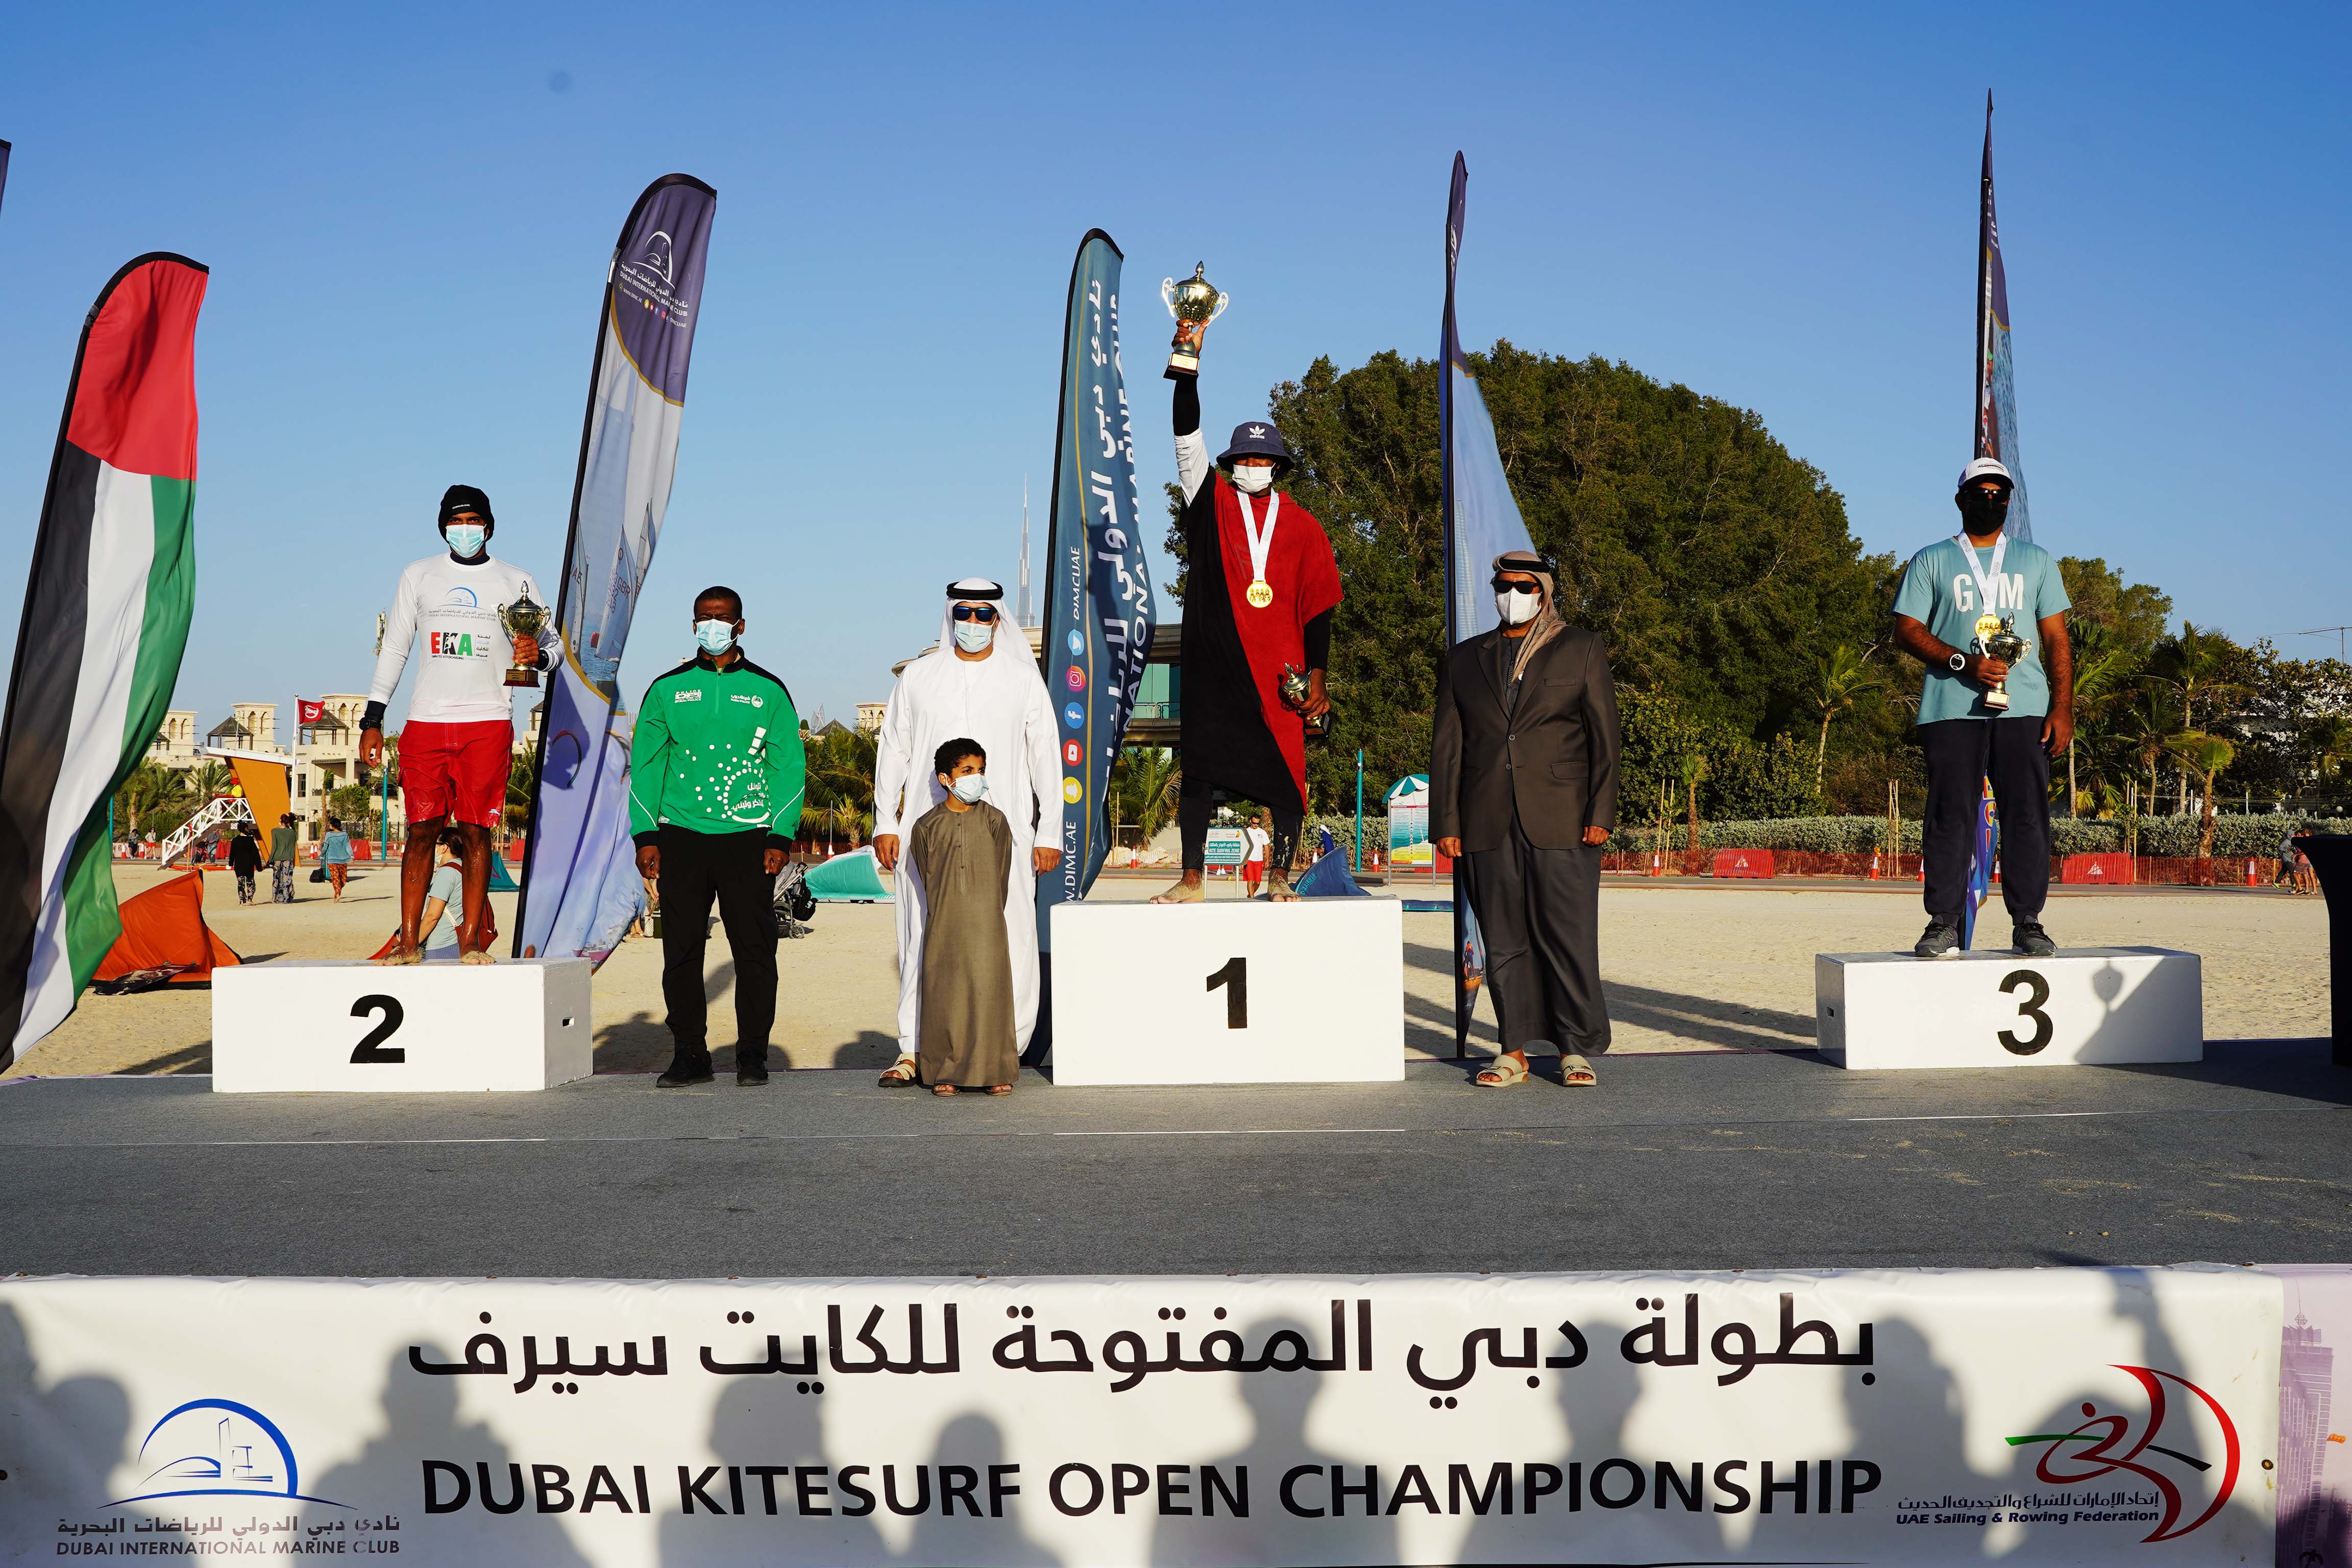 Stars of Our National Team topped the Dubai Kitesurf Open